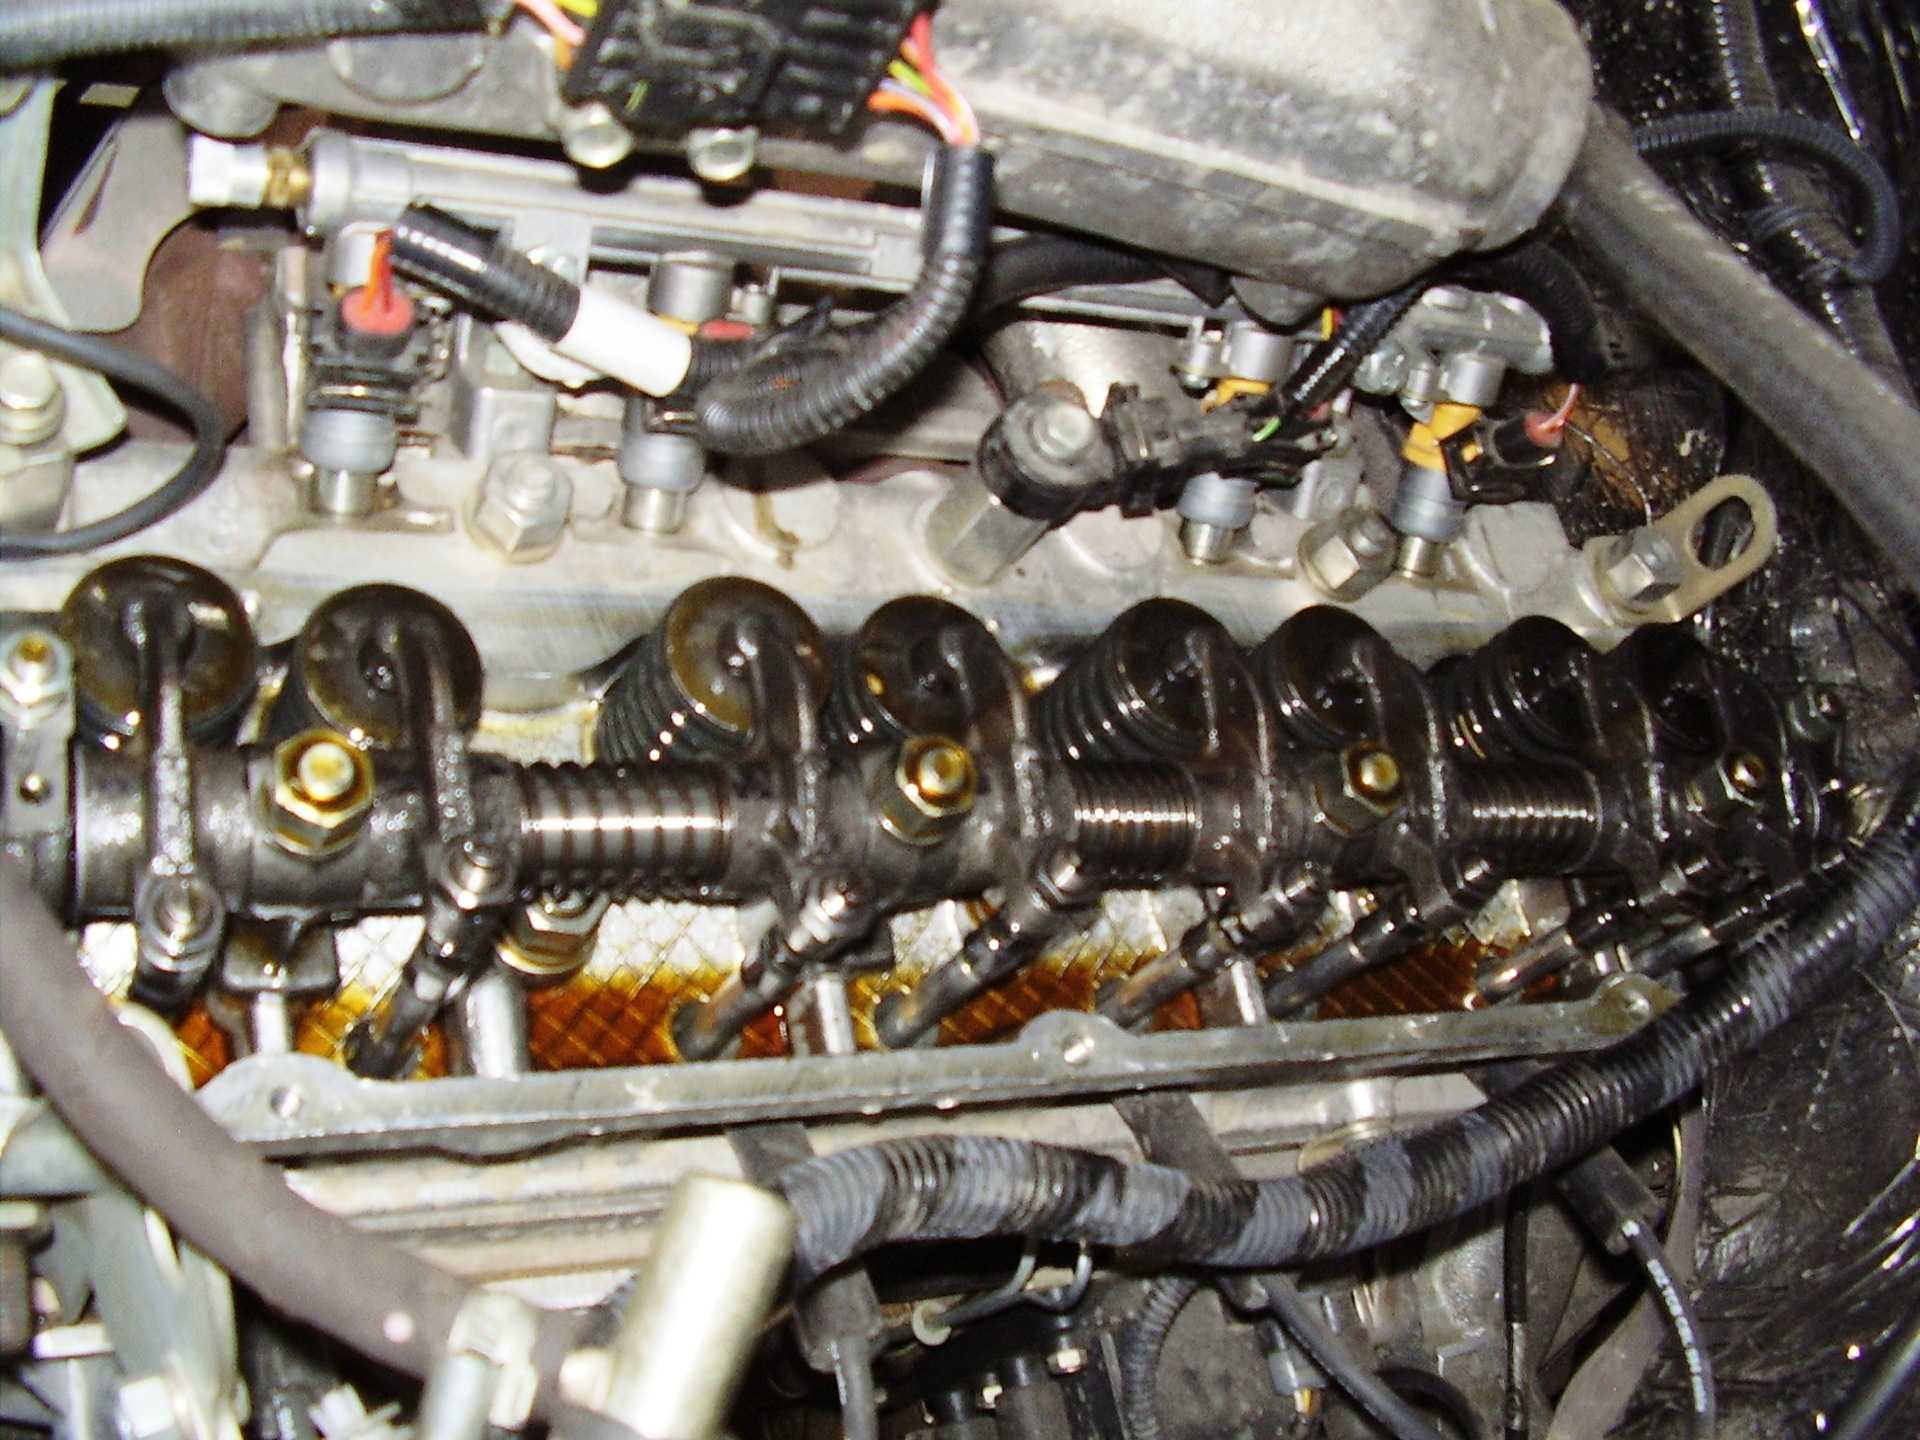 Порядок регулировки клапанов двигатель 4216 – регулировка клапанов двигателя 4216 — ремонт своими руками — автоблог 24premier.ru — автоновости, обзоры, ремонт